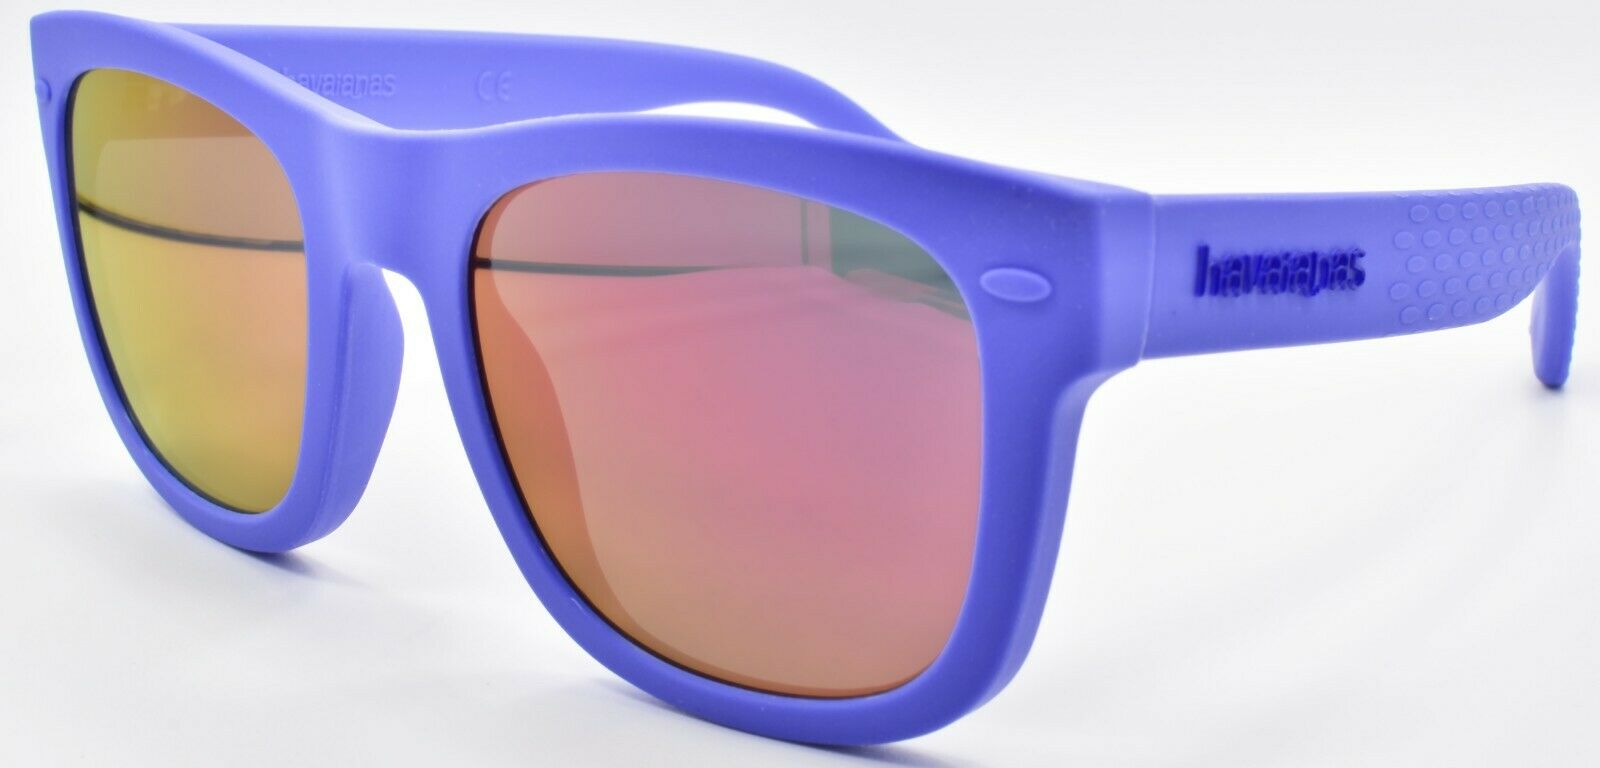 1-Havaianas Paraty /S GEGVQ Sunglasses 48-19-130 Blue / Mirror Pink-762753823687-IKSpecs